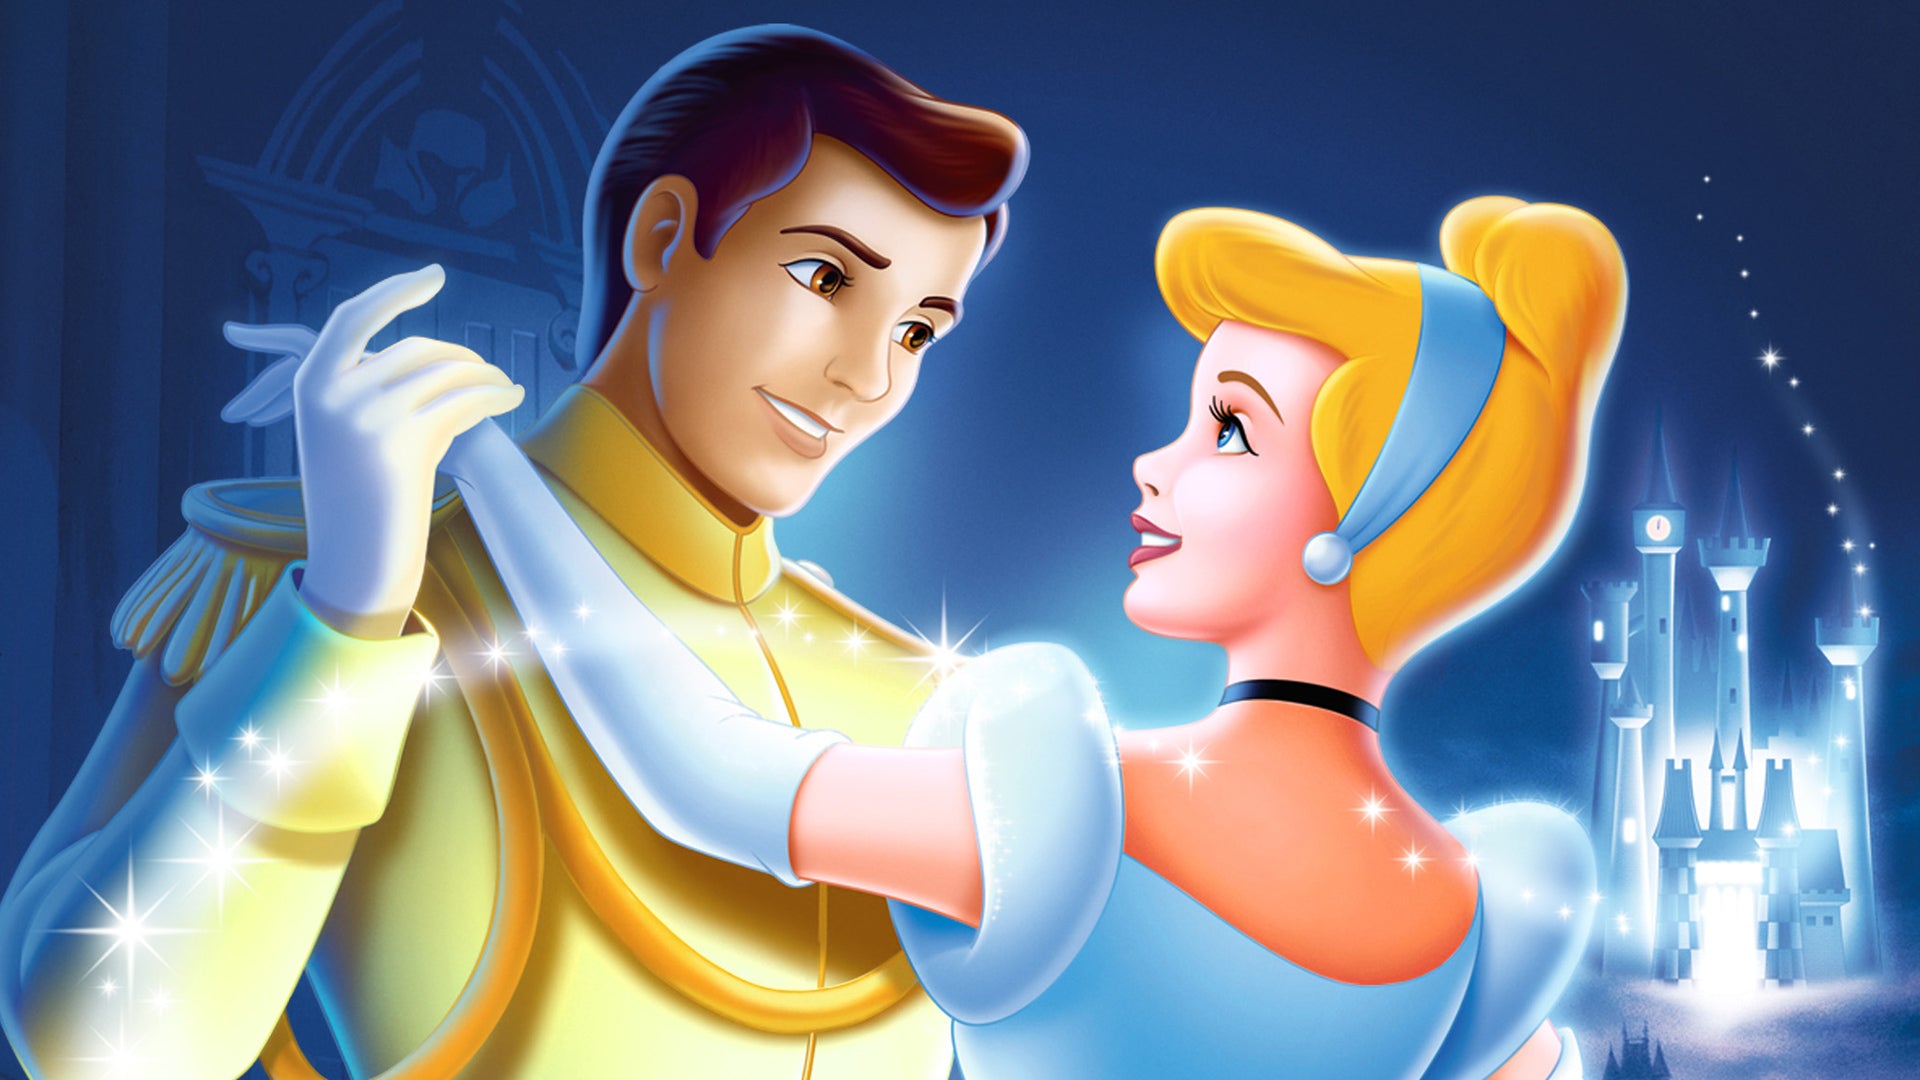 Disney's Cinderella & Cinderella - Live Action